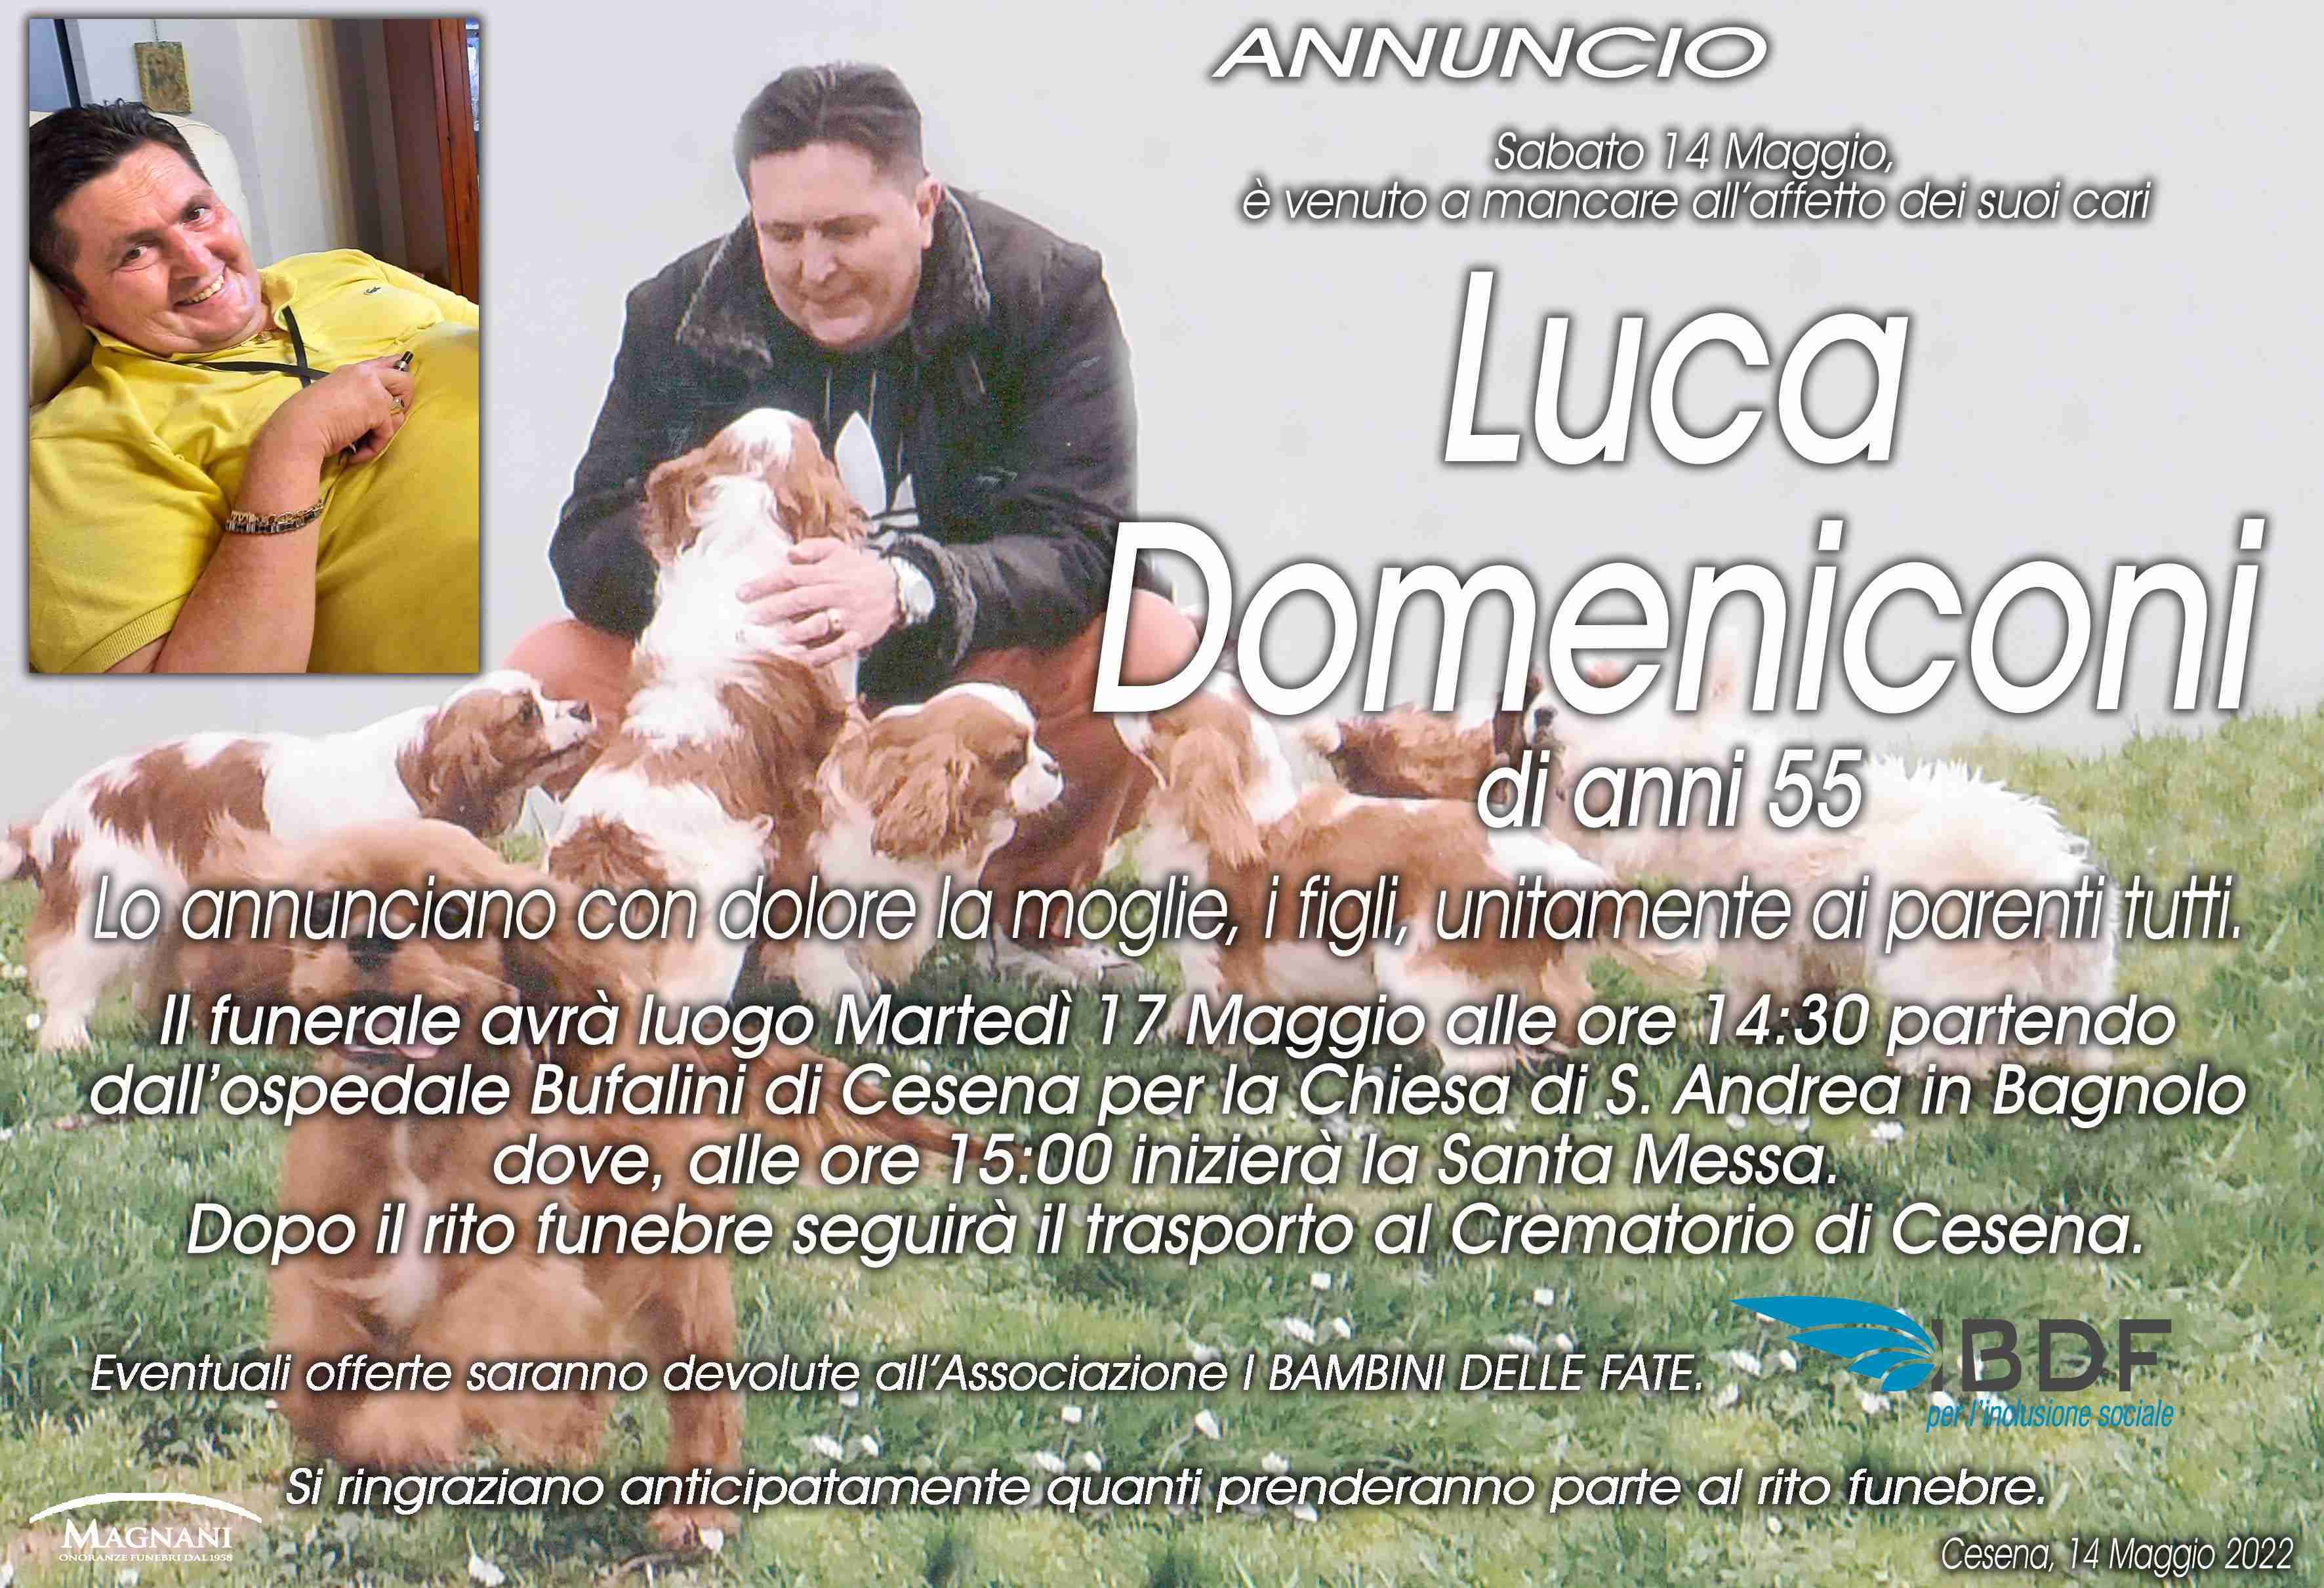 Luca Domeniconi